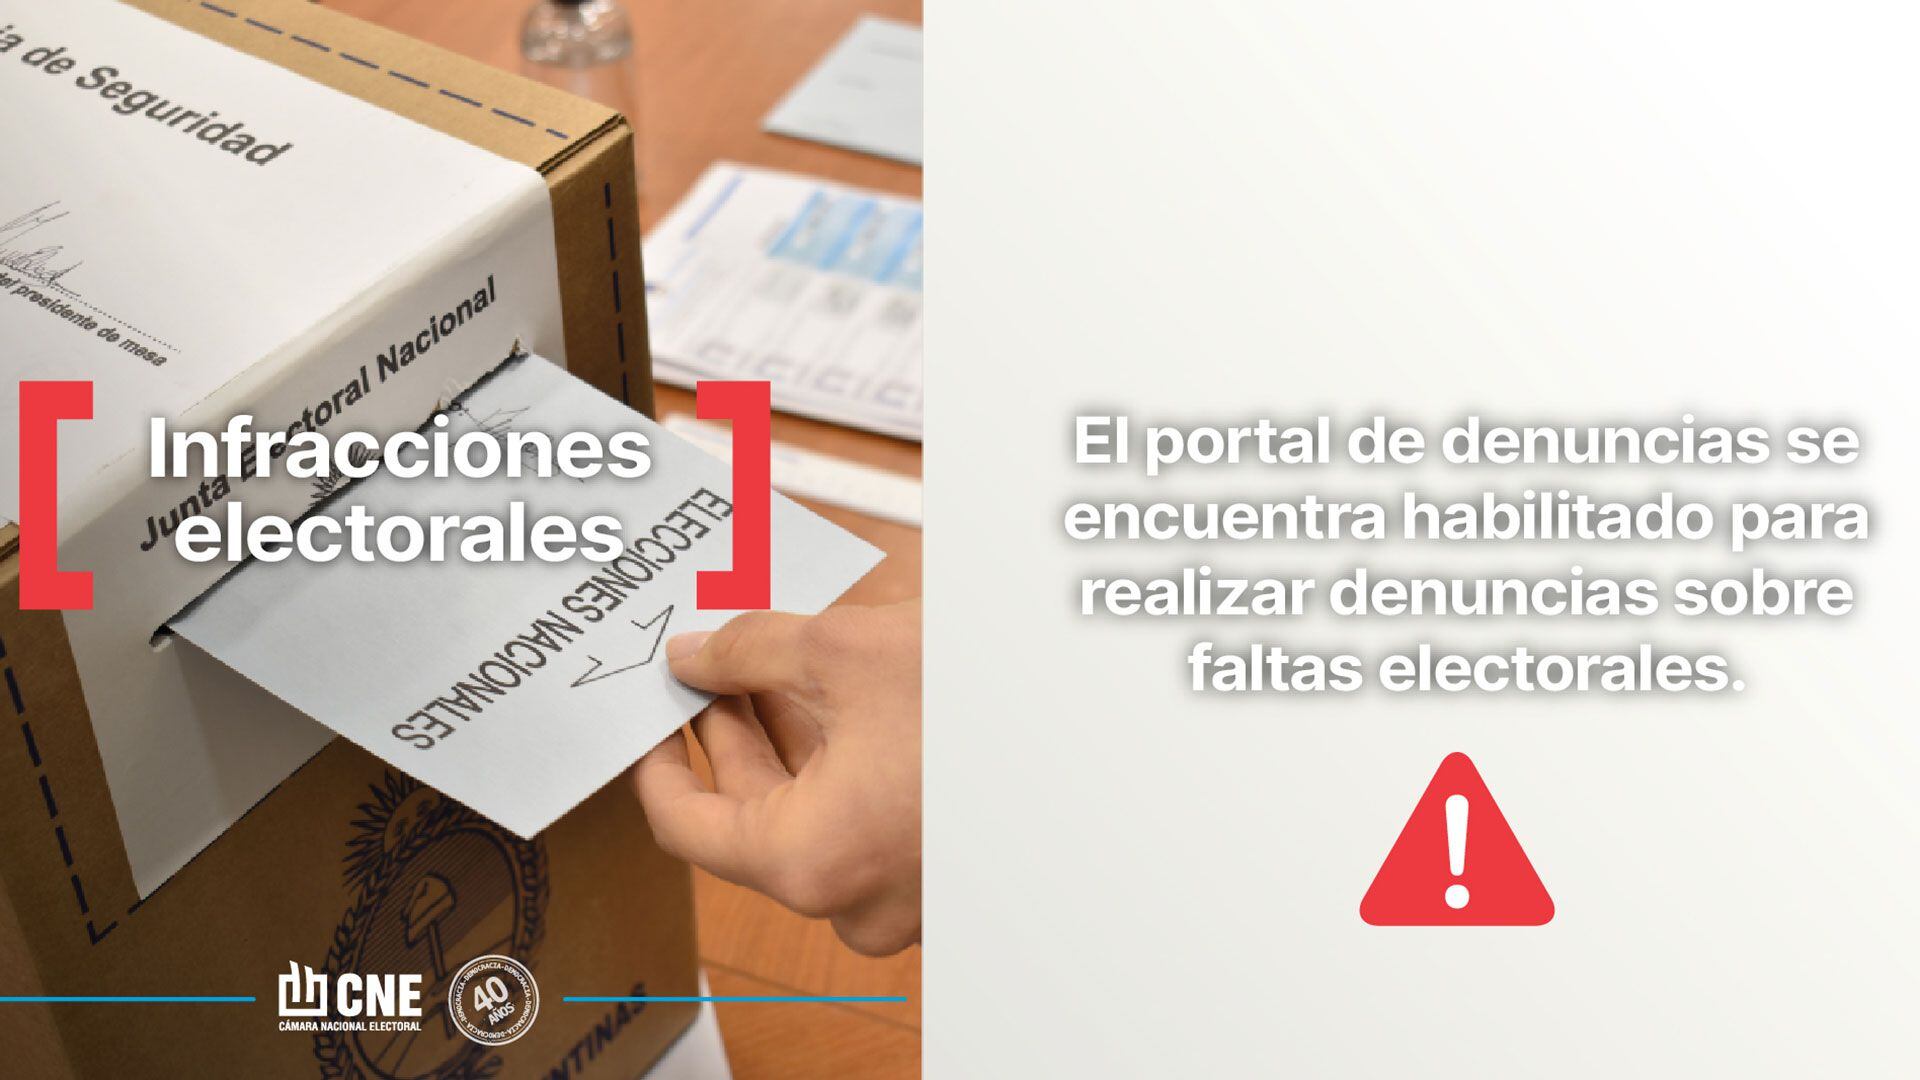 Irregularidades infracciones electorales CNE portal de denuncias